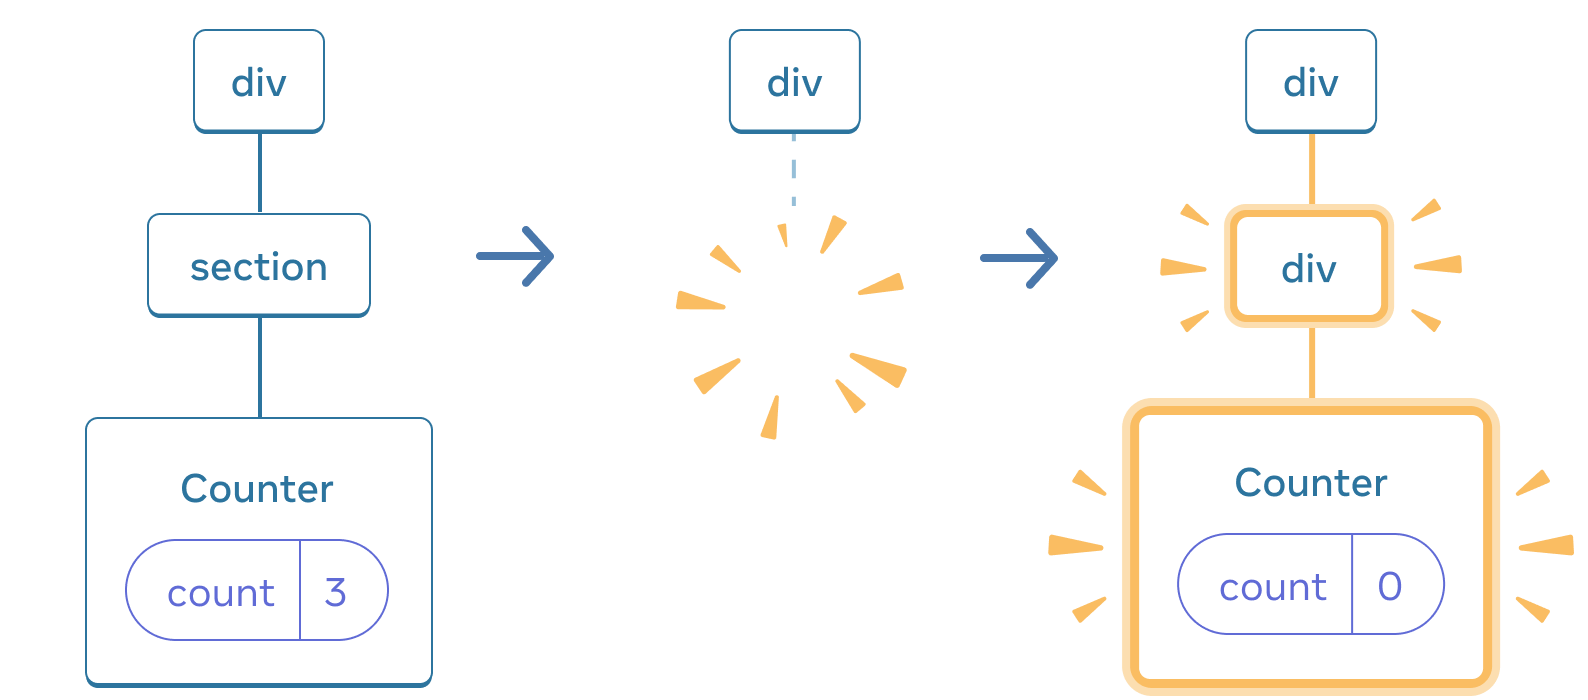 图表包含三个部分，每个部分之间有一个箭头过渡。 第一部分包含一个标记为 `div` 的 React 组件，其中有一个标记为 `section` 的子组件，该组件有一个标记为 `Counter` 的子组件，其中包含一个标记为 `count`、值为 3 的 state 气泡。中间部分具有相同的 `div` 父组件，但子组件现已被删除，由黄色“proof”图像指示。第三部分再次具有相同的 `div` 父级，现在有一个由黄色突出显示并且标记为 `div` 的新子级，还有一个标记为 `Counter` 的新子级，其中包含一个标记为 `count` 且值为 0 的 state 气泡。她们都使用黄色进行了高亮。